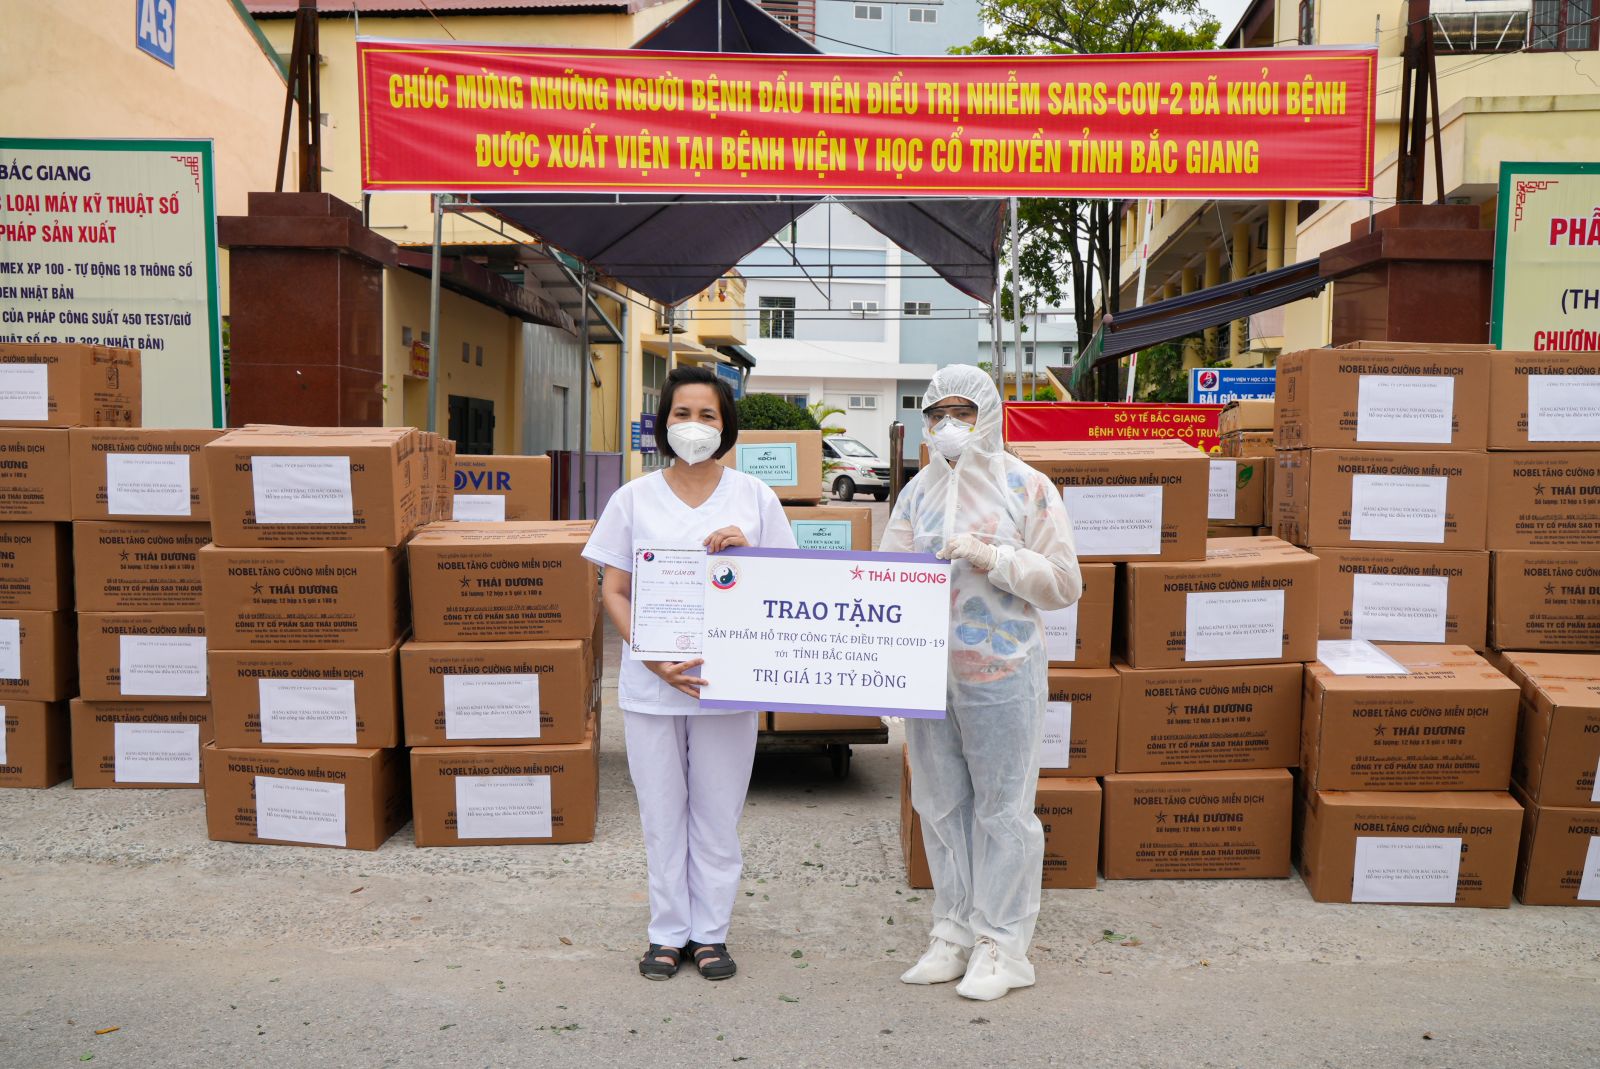 Trao tặng sản phẩm hỗ trợ điều trị Covid 19 tới Bệnh viện YHCT Tỉnh Bắc Giang